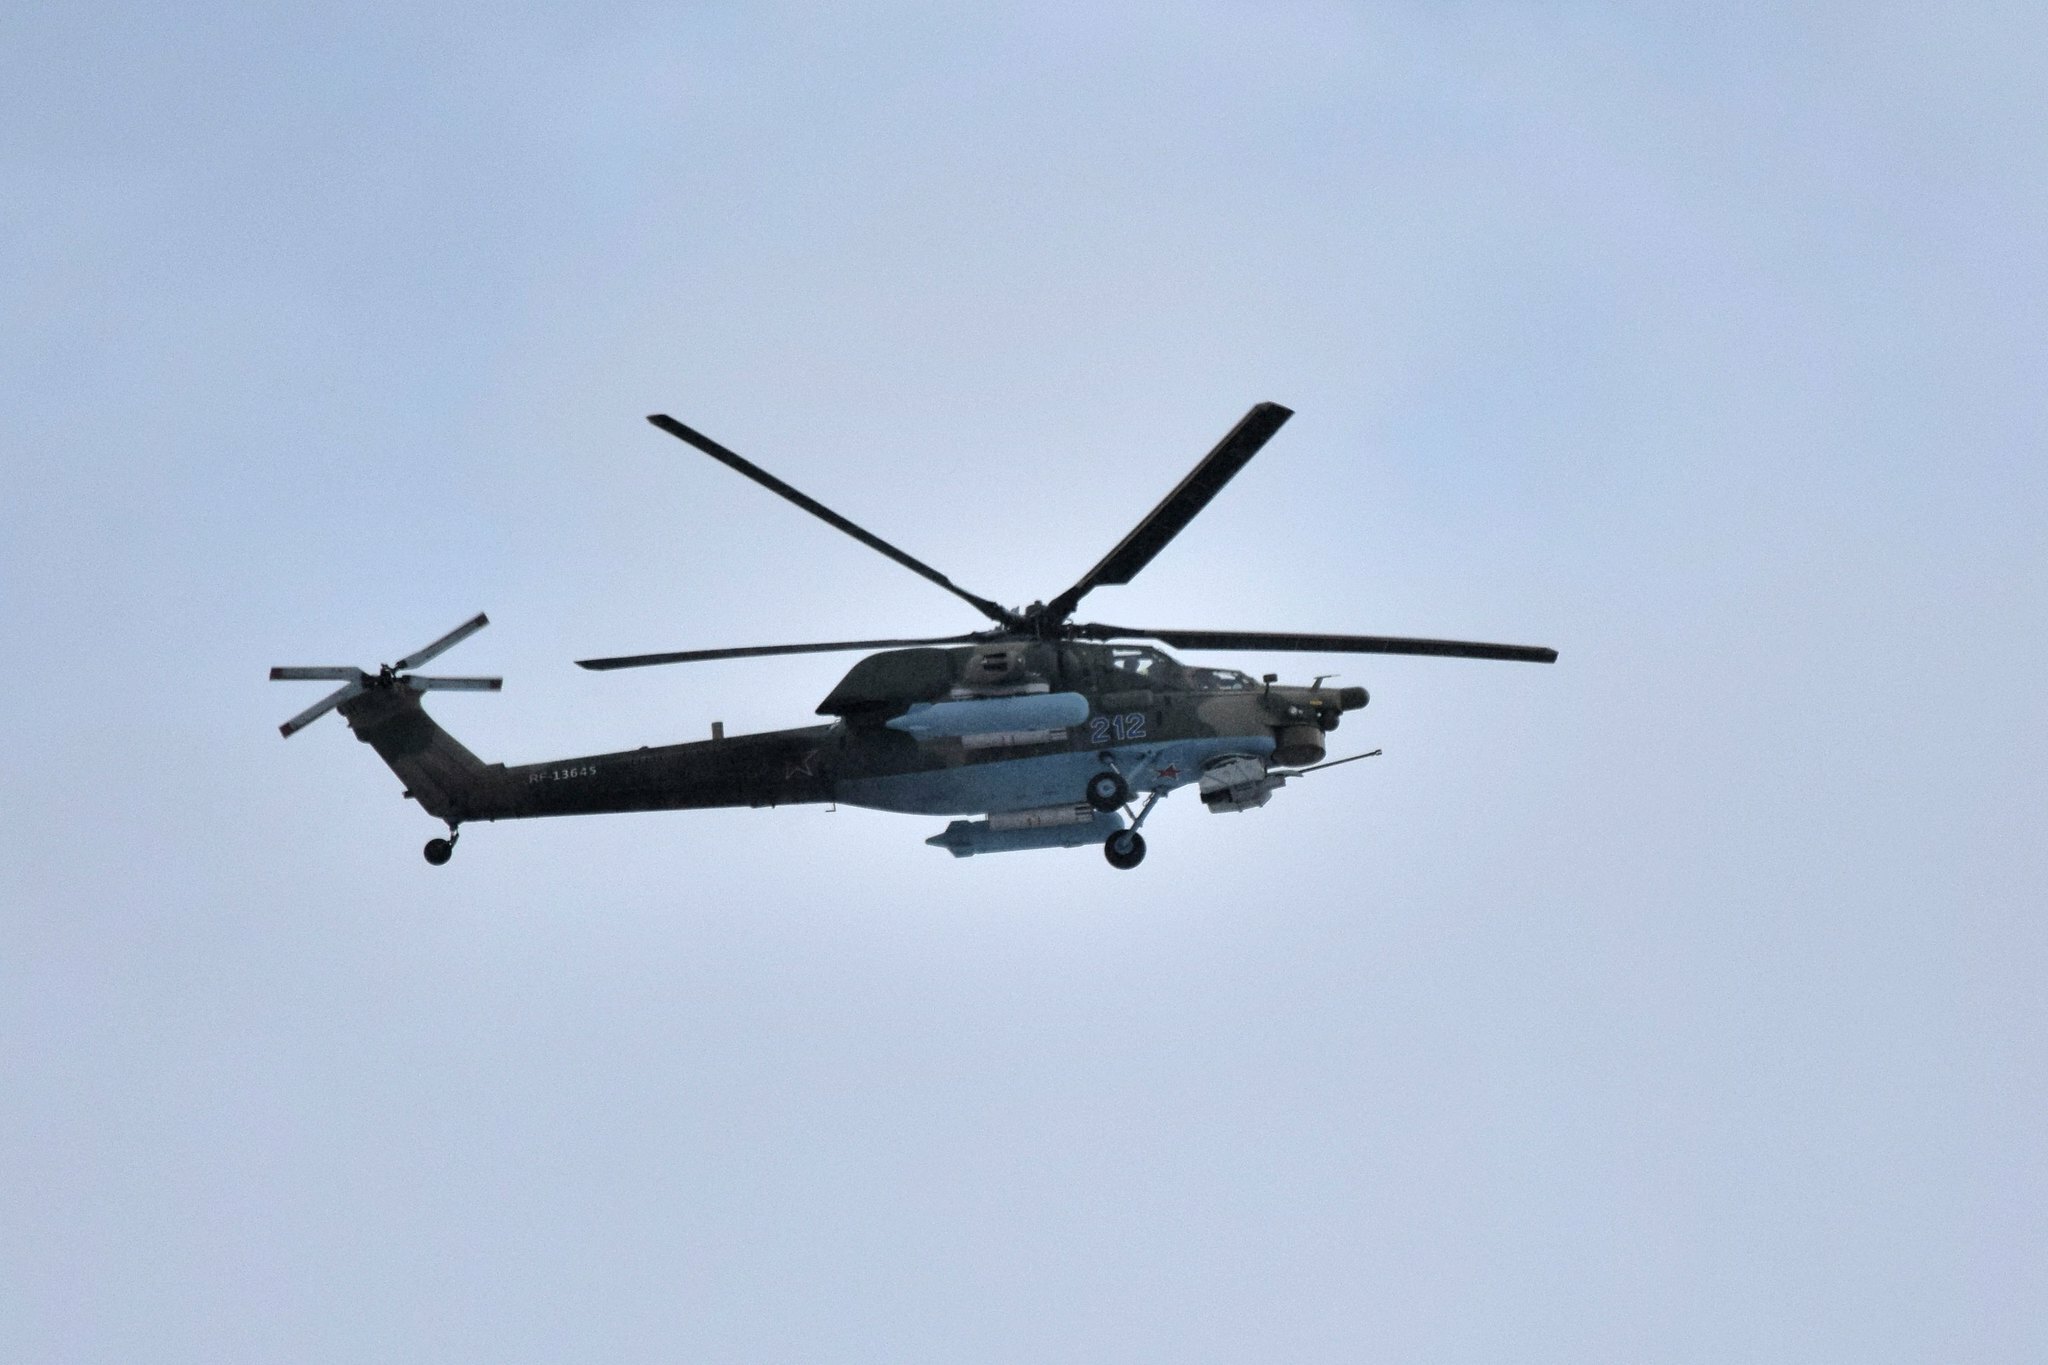 Городские теплосети Ижевска проверят с помощью вертолета